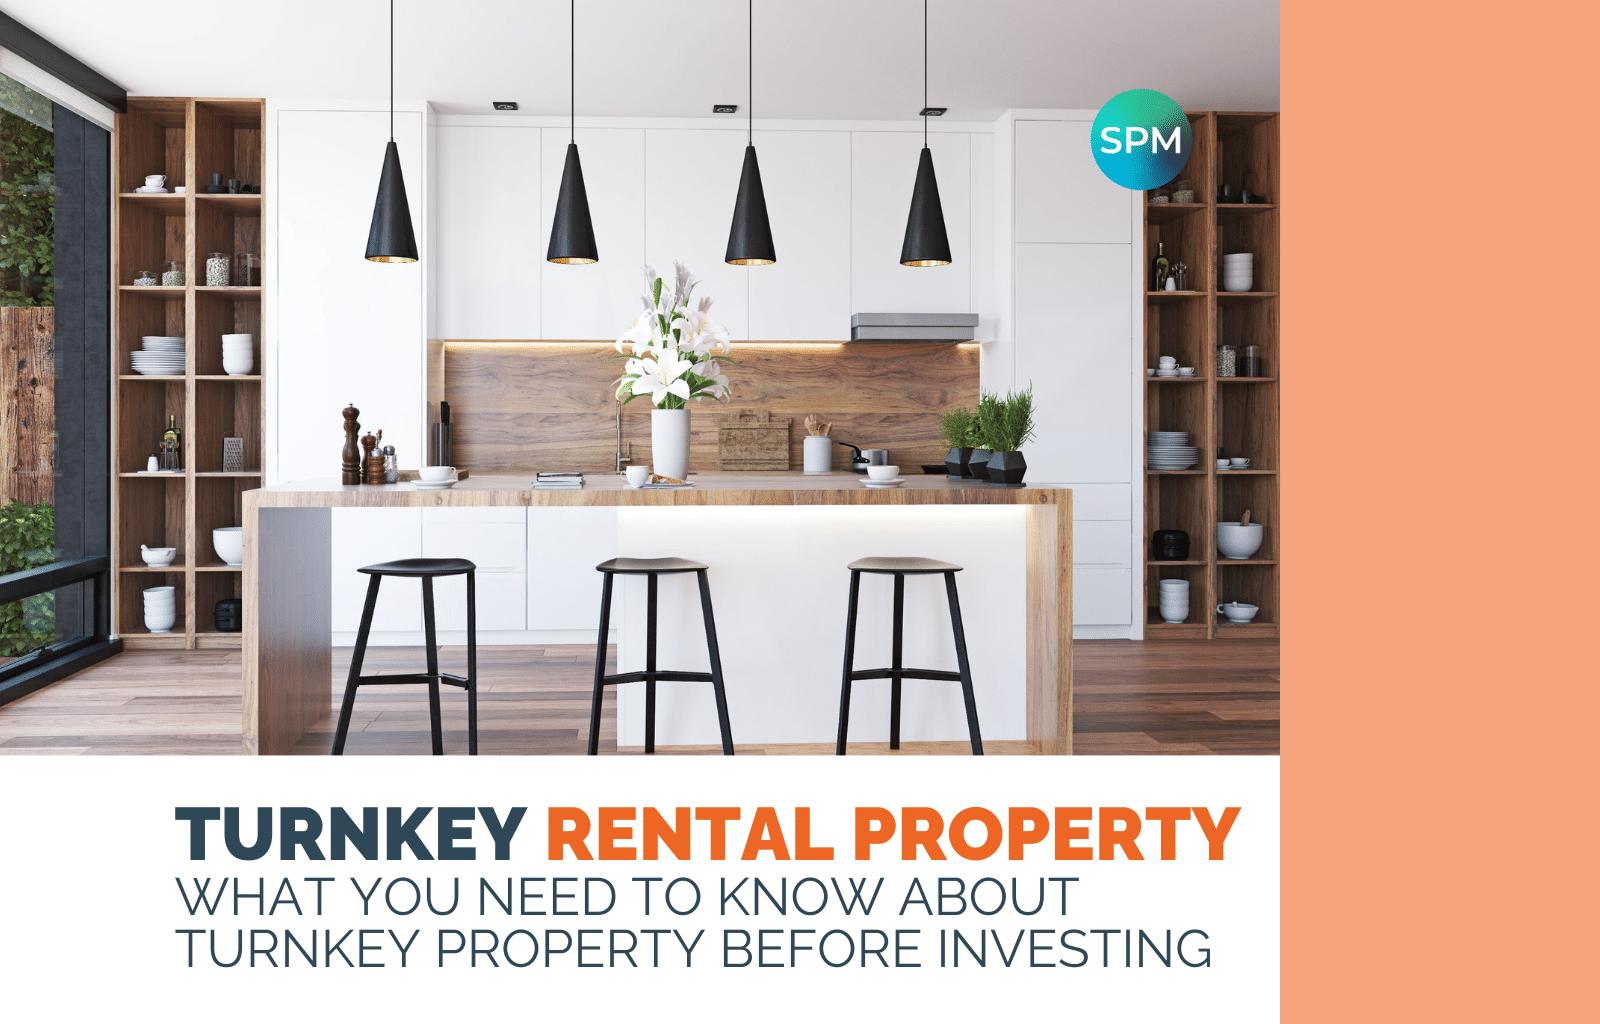 Turnkey property investing